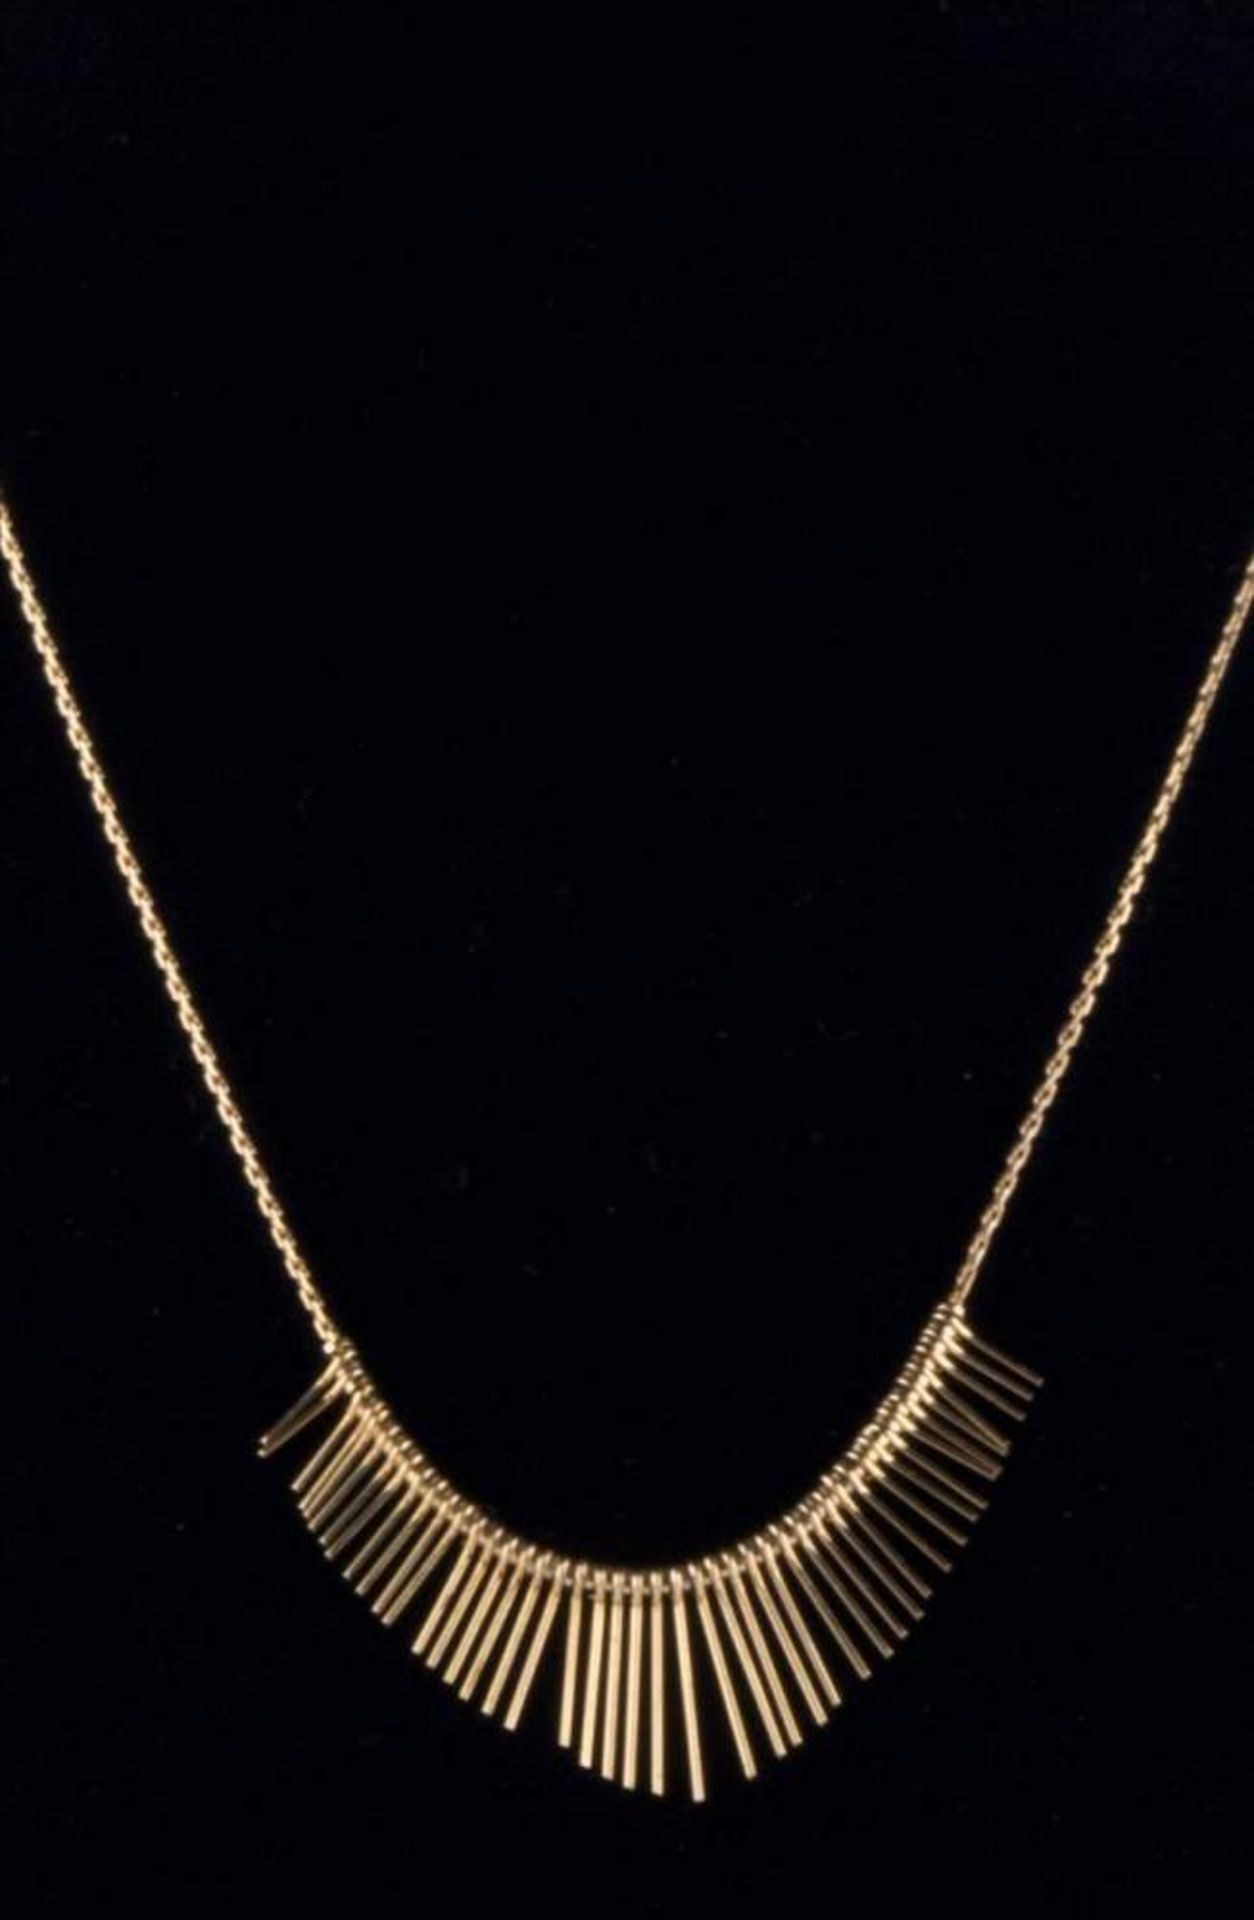 Damen Collier / Women's necklace 333,000 GG, Gewicht ca. 4 g., / 333,000 yellow gold, weight c. 4 - Bild 2 aus 2